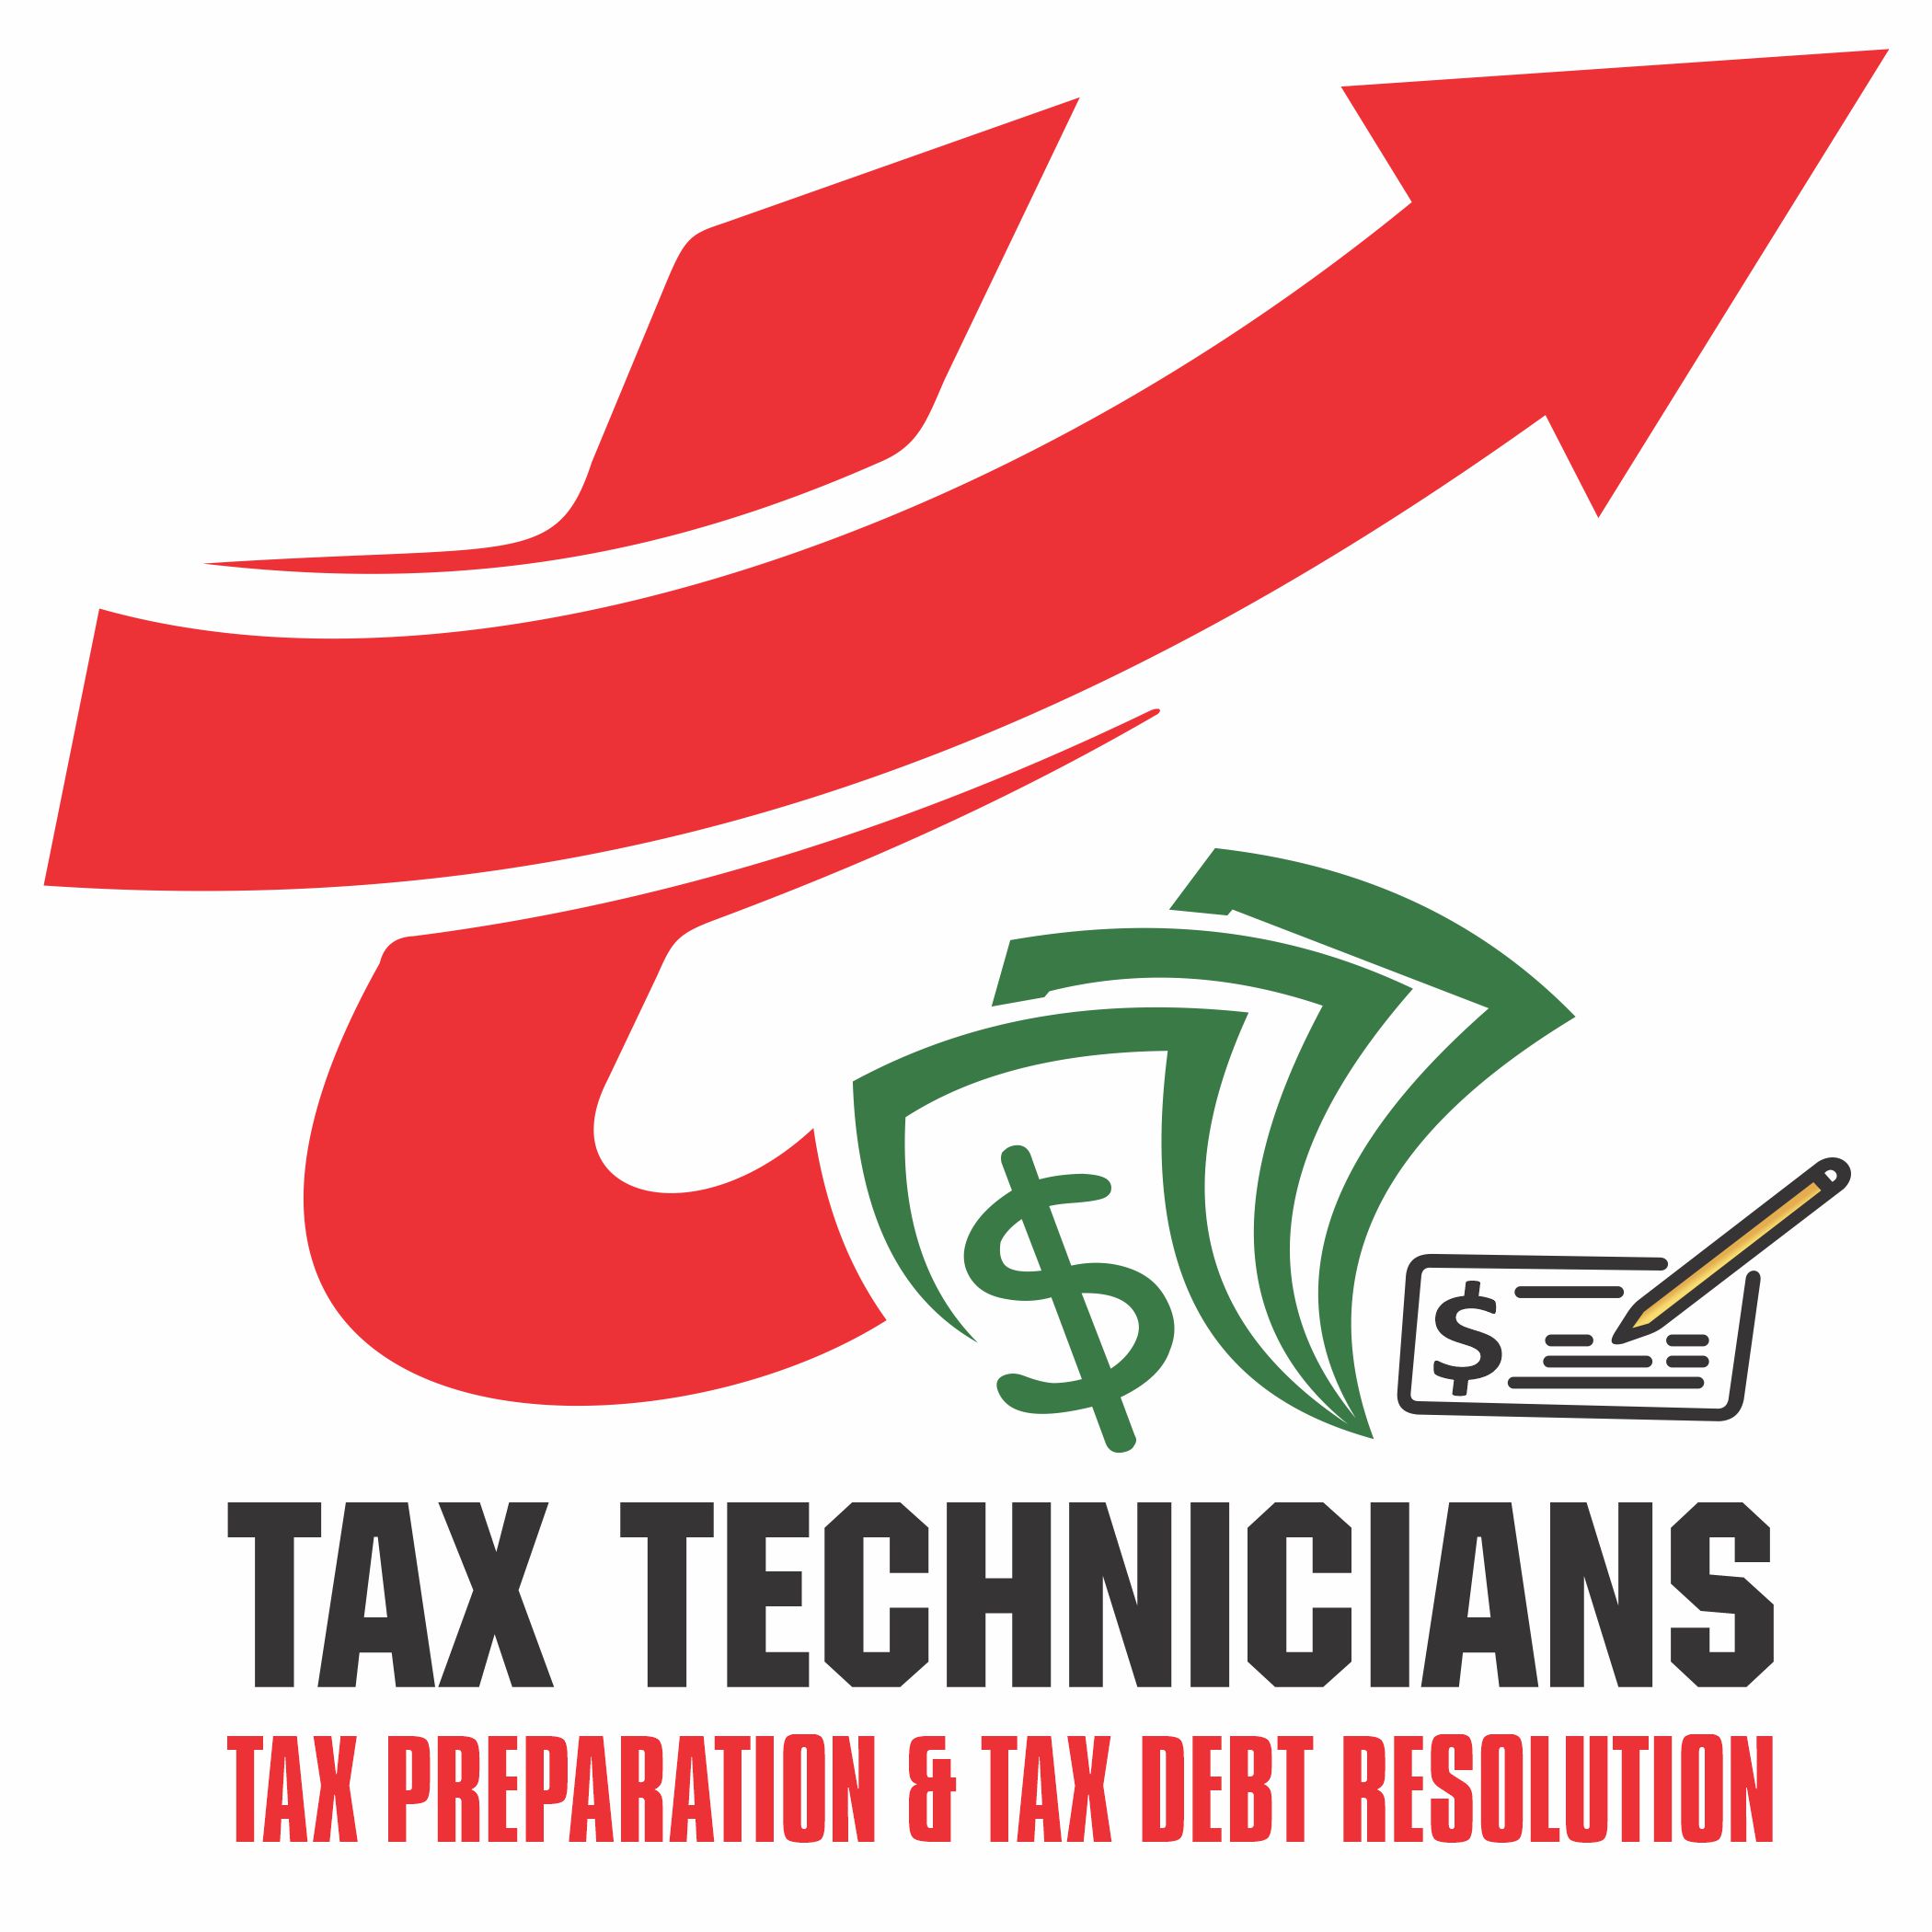 F-IRS! Tax Technicians